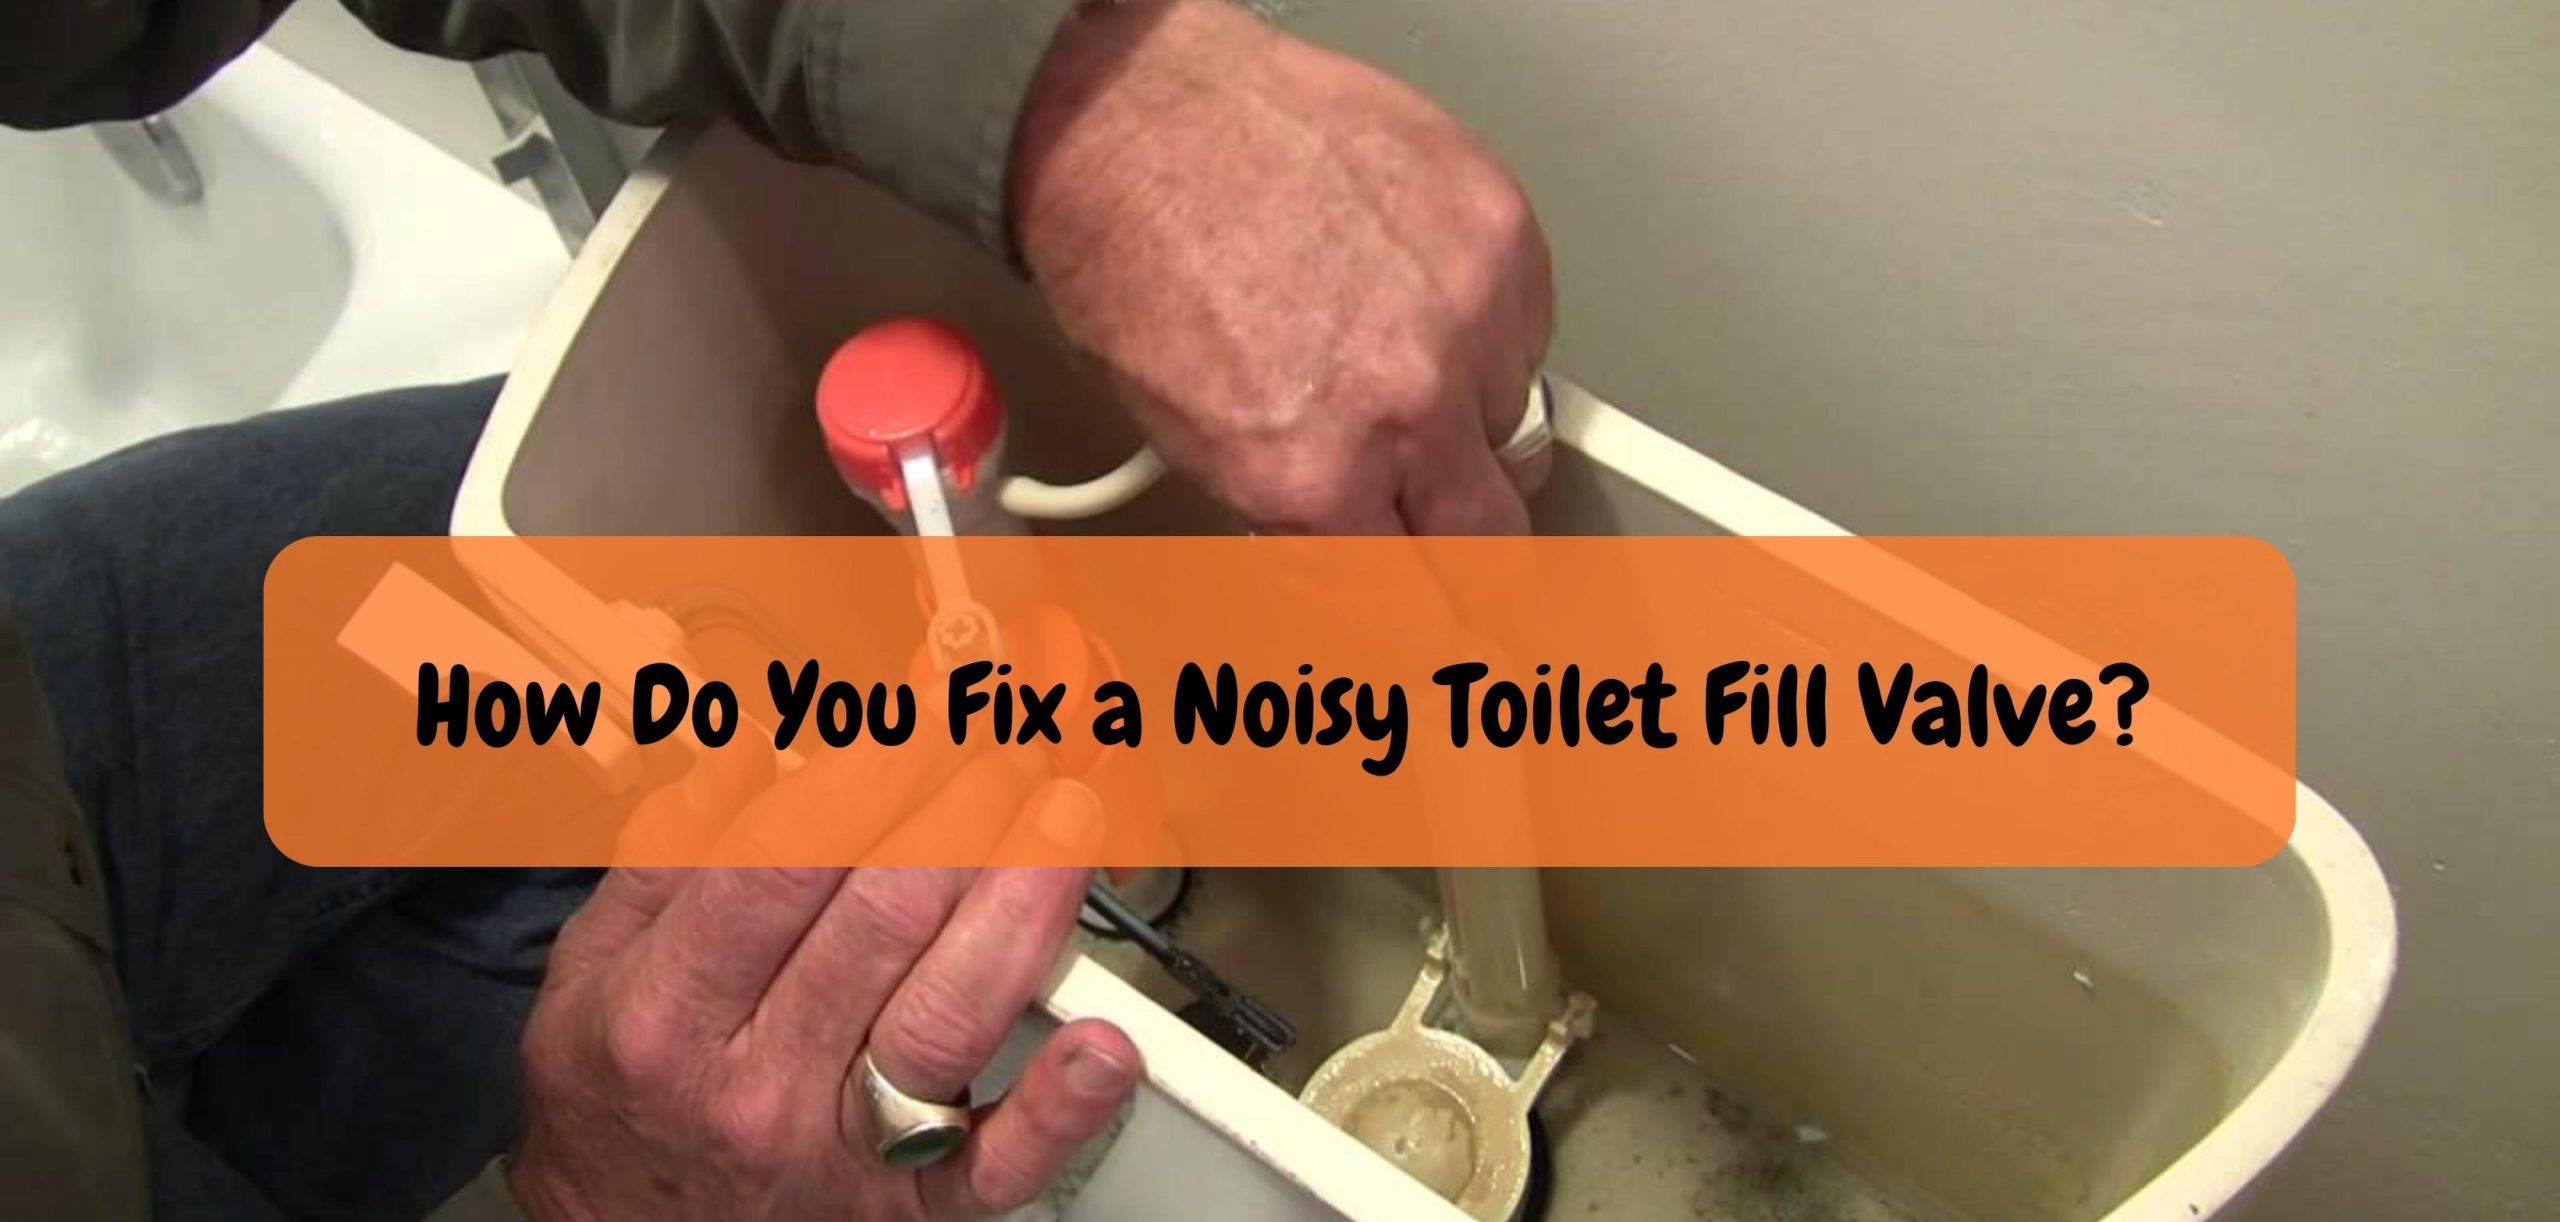 How Do You Fix a Noisy Toilet Fill Valve